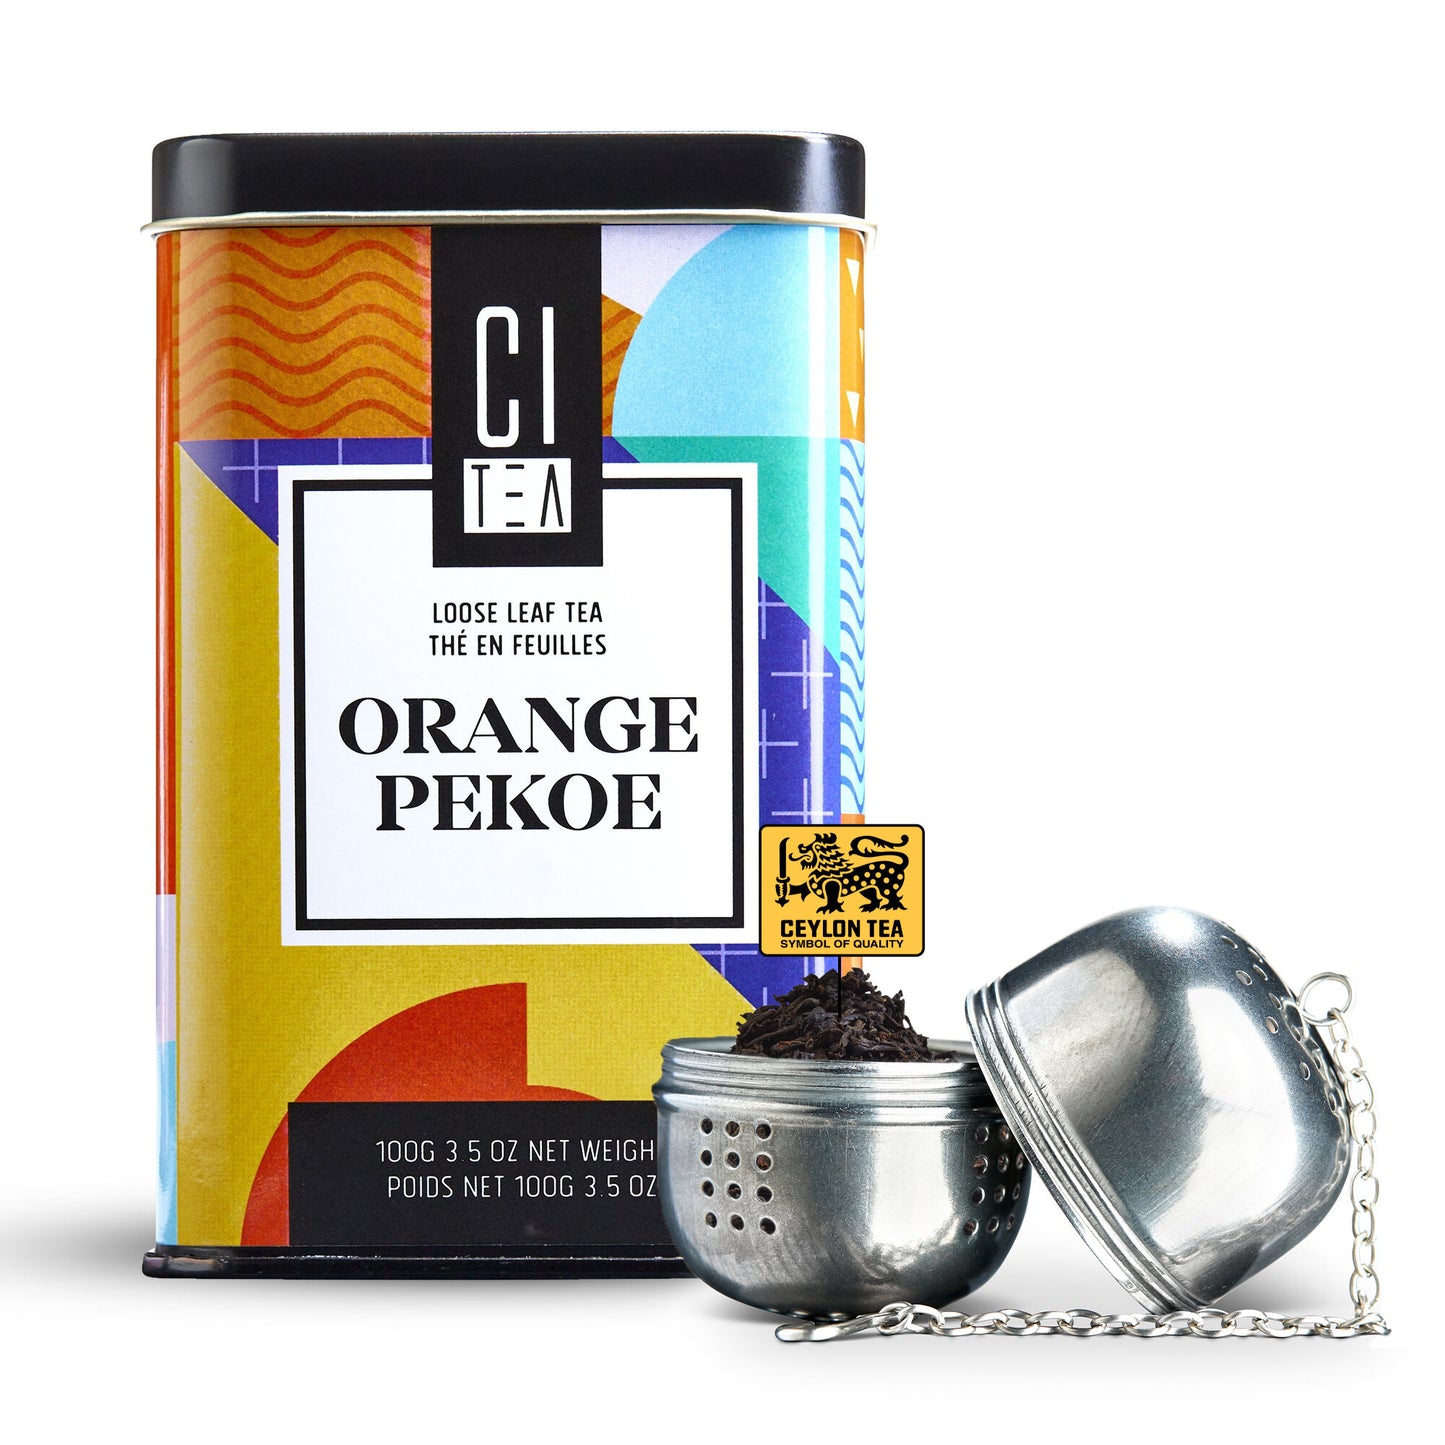 Orange Pekoe Loose Leaf Tea with Teaball - 100 g